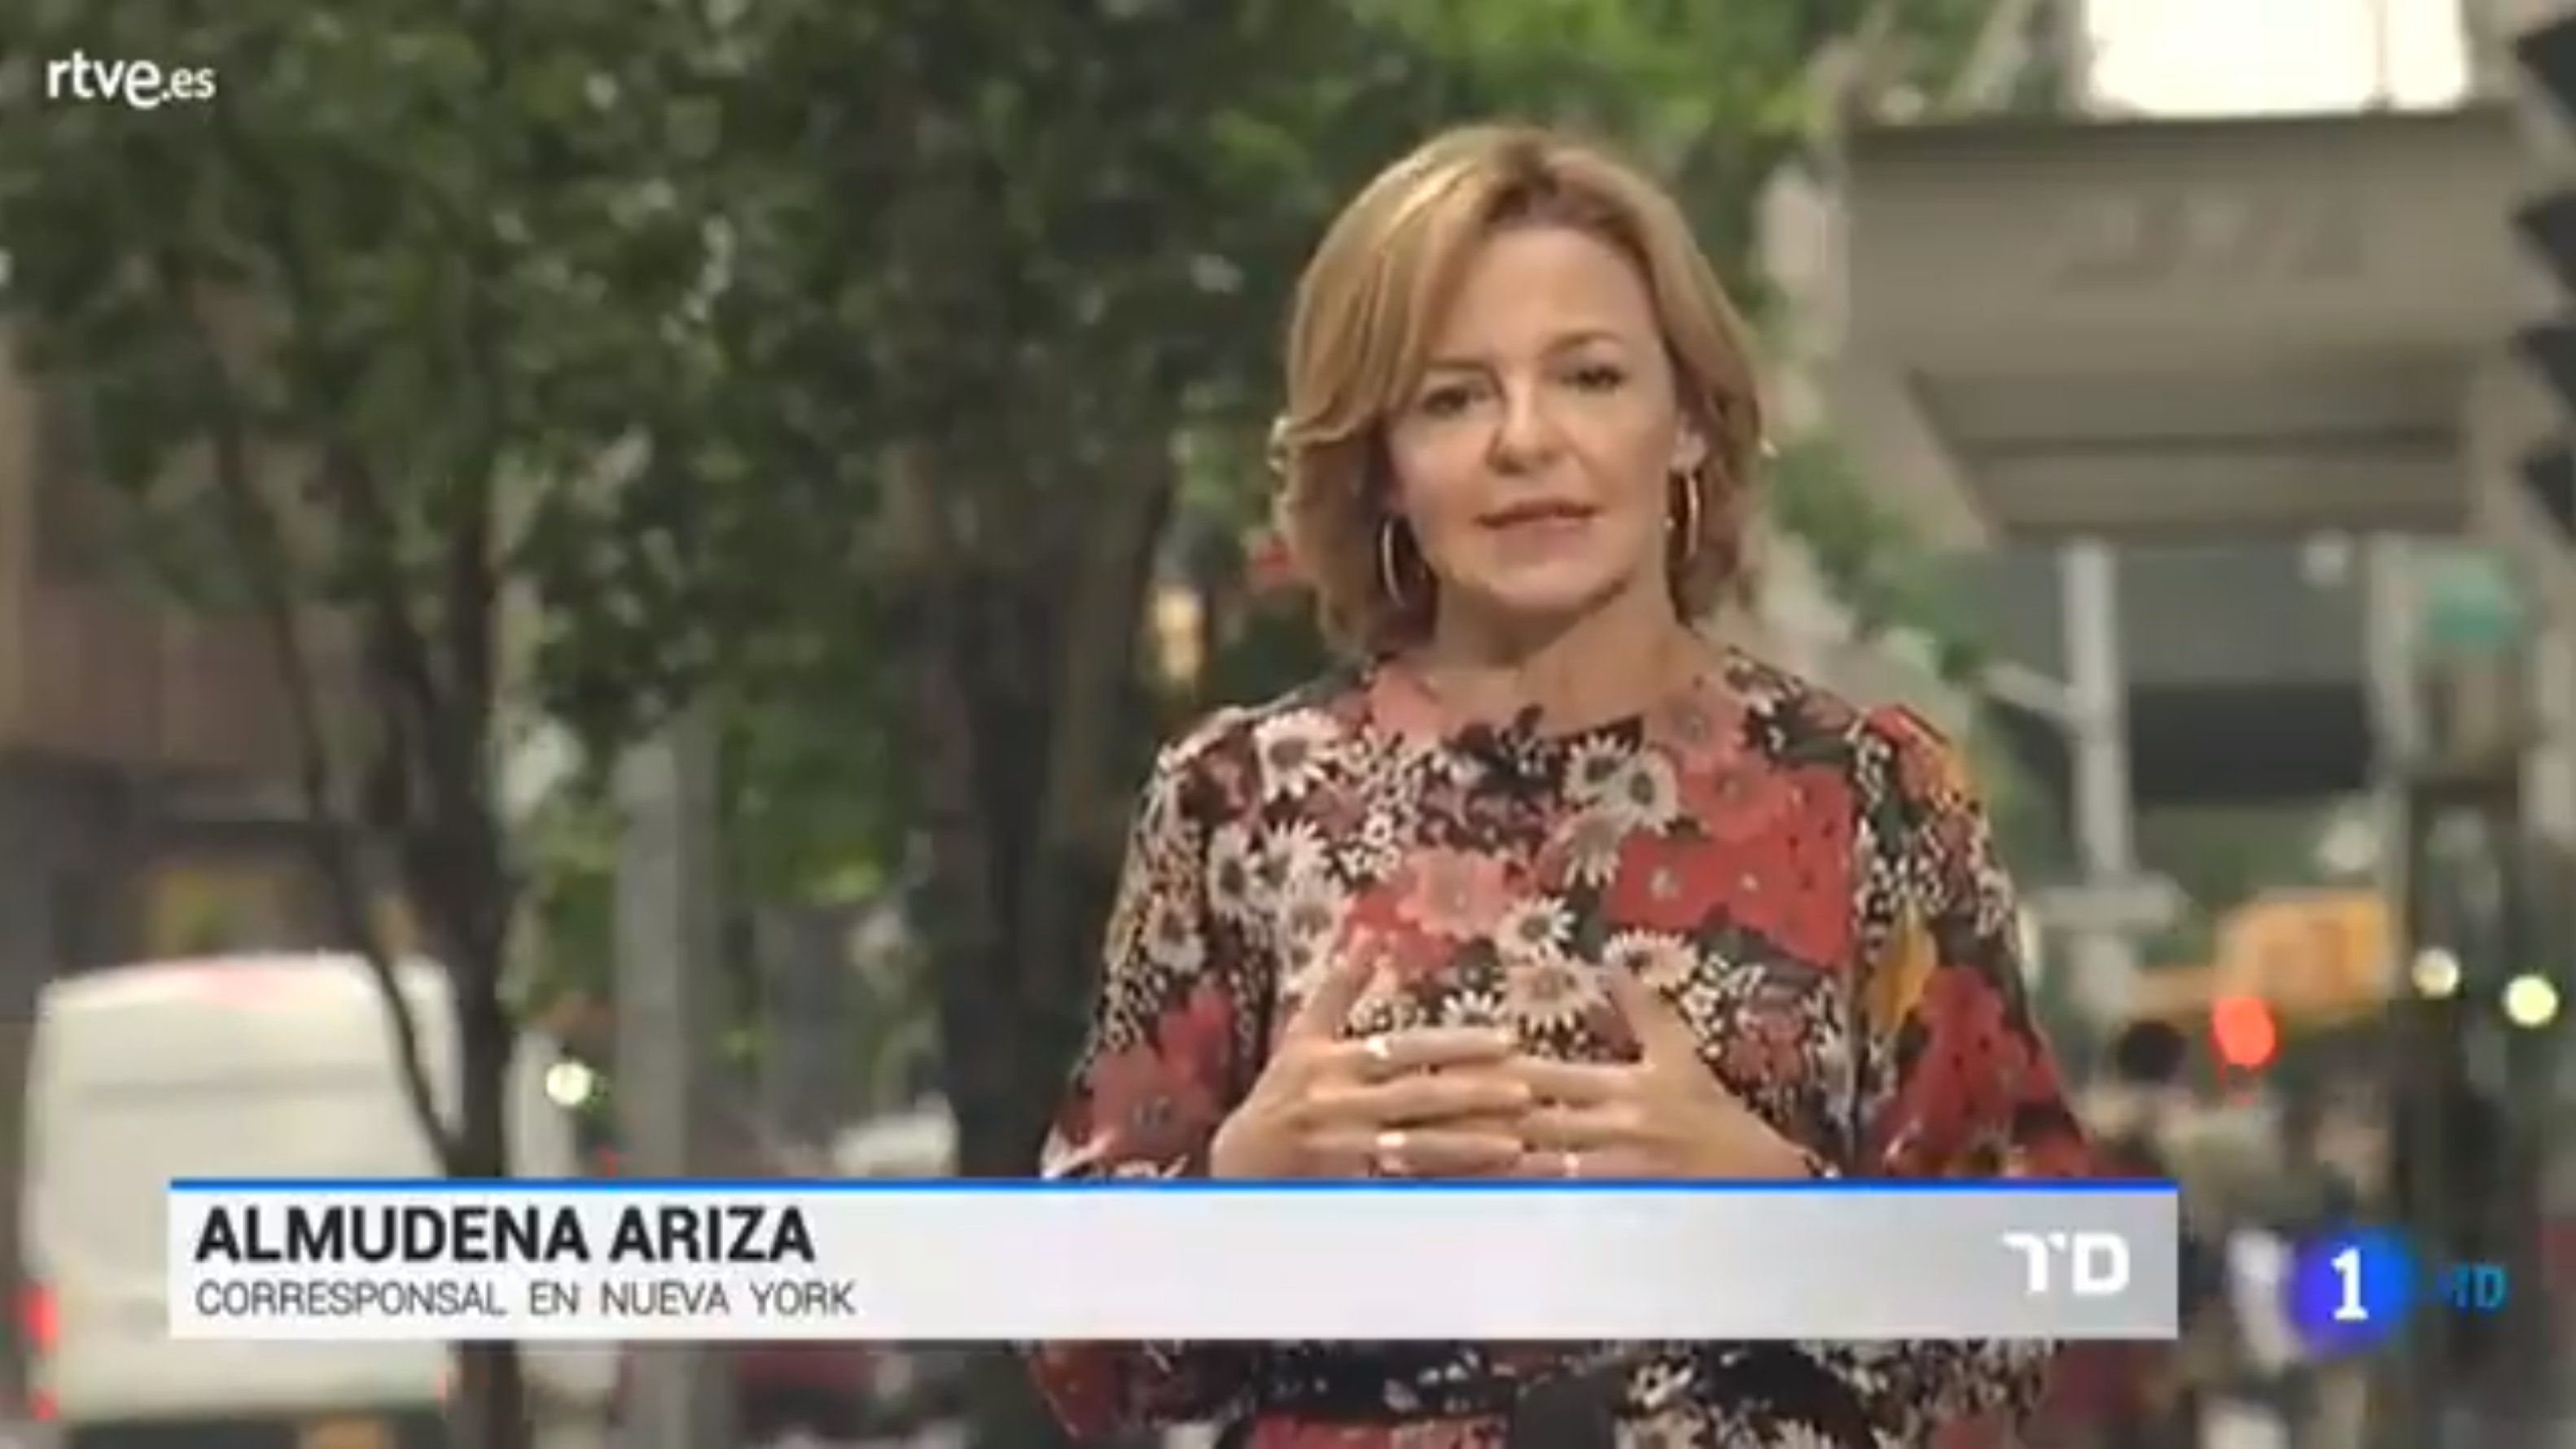 Almudena Ariza planta Enric Hernández a RTVE per falta de suport: "No he sabut il·lusionar"